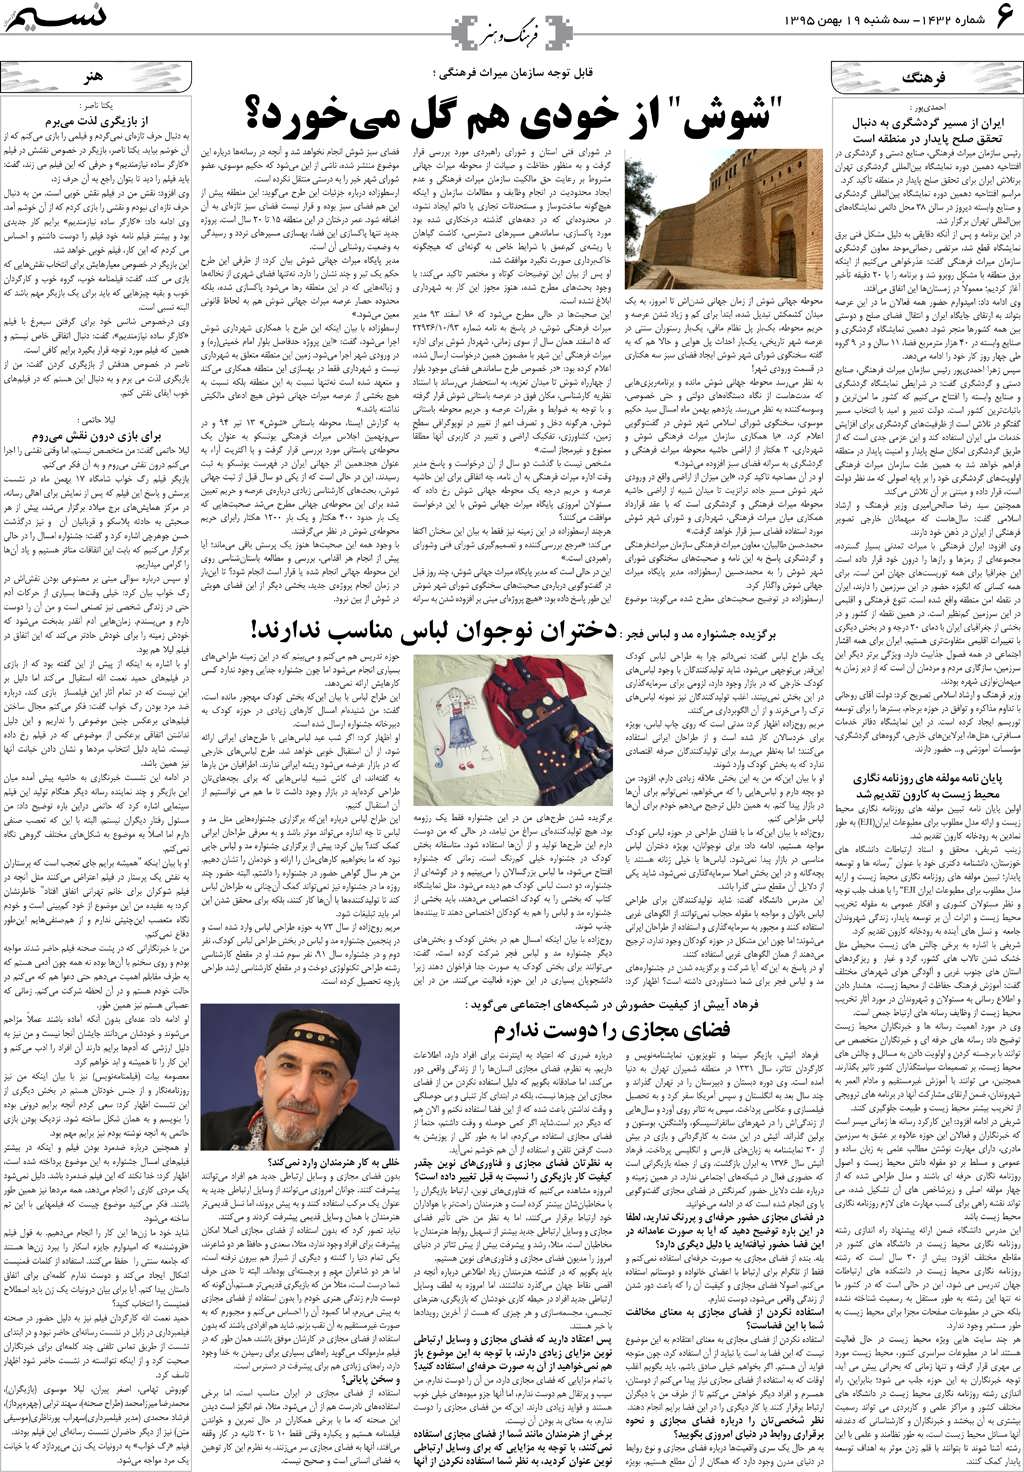 صفحه فرهنگ و هنر روزنامه نسیم شماره 1432